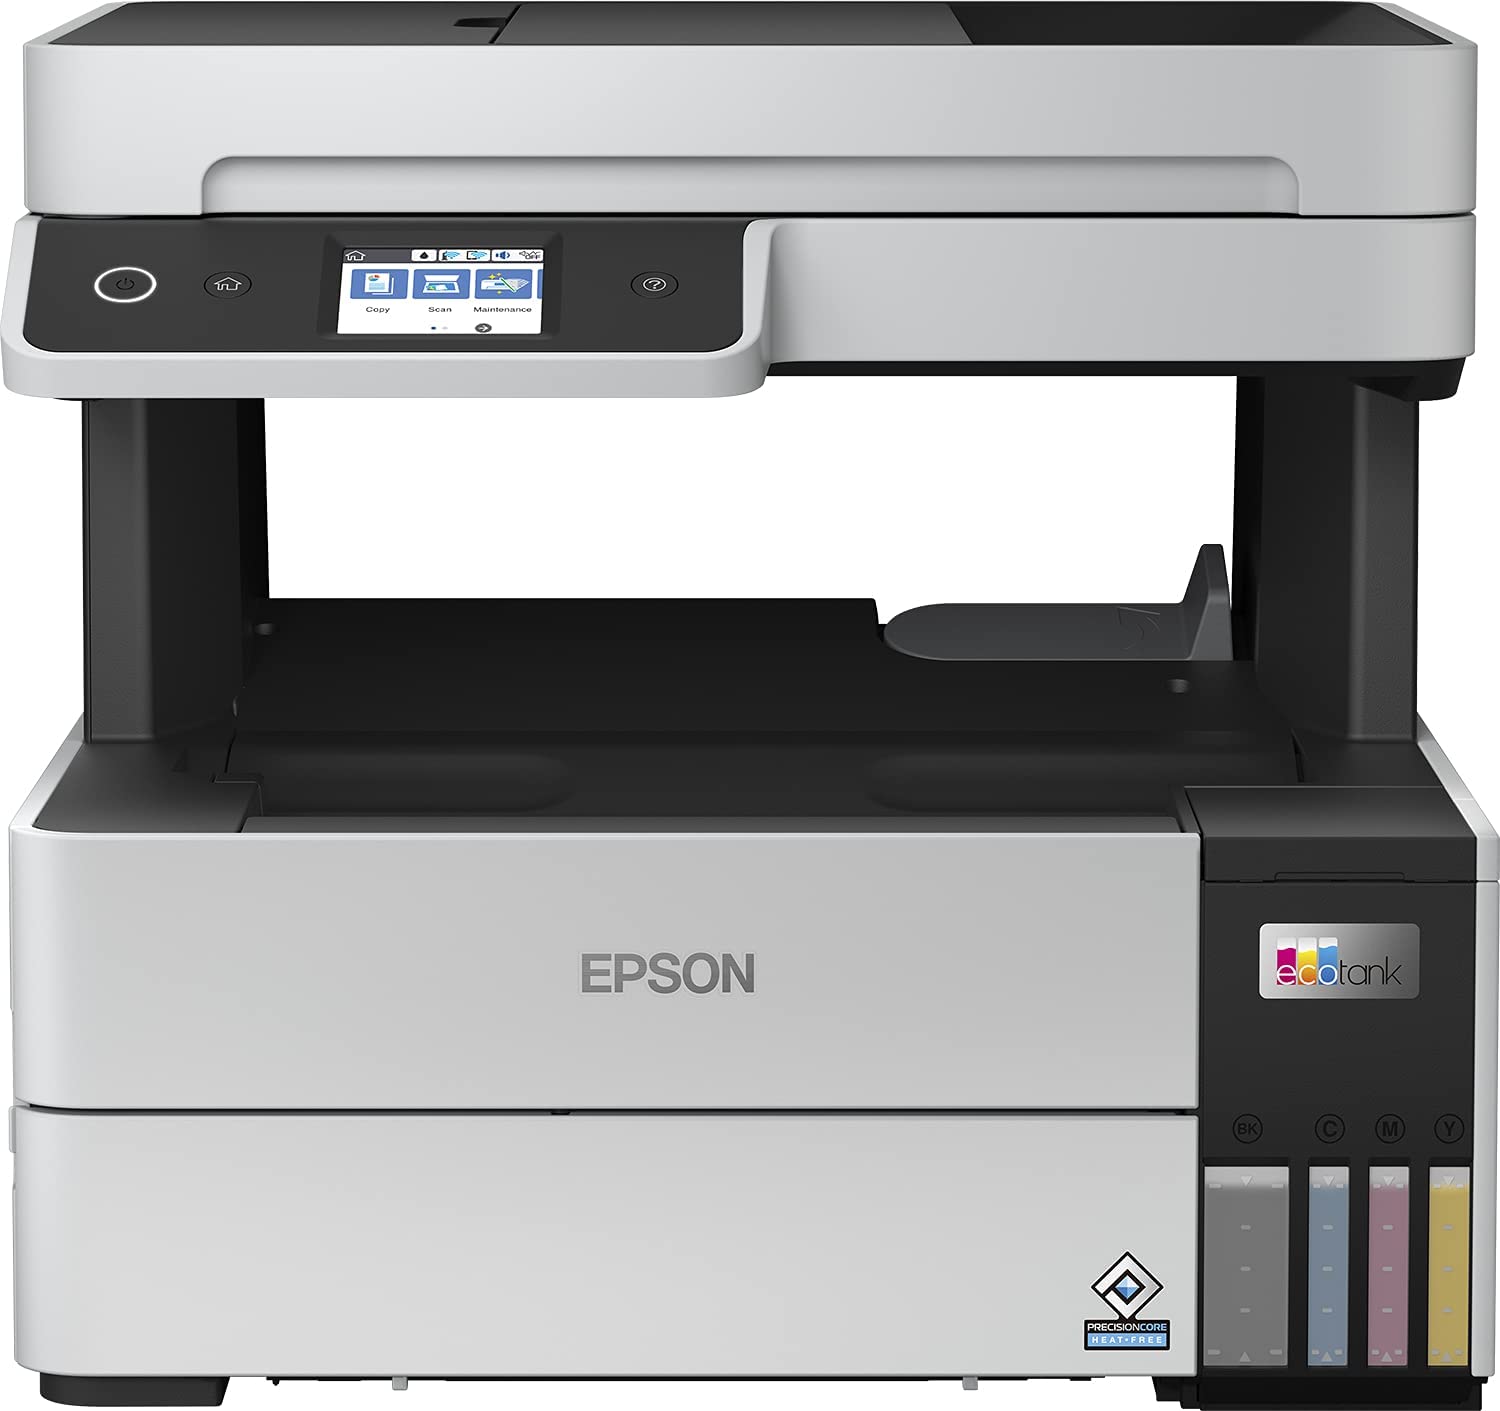 Epson Imprimante EcoTank ET-5170 avec Réservoirs, Multifonction 4-en-1: Imprimante recto verso / Scanner / Copieur / Fax, A4, Jet d'encre couleur, Wifi Direct, Ethernet, Ecran, Faible coût par page 